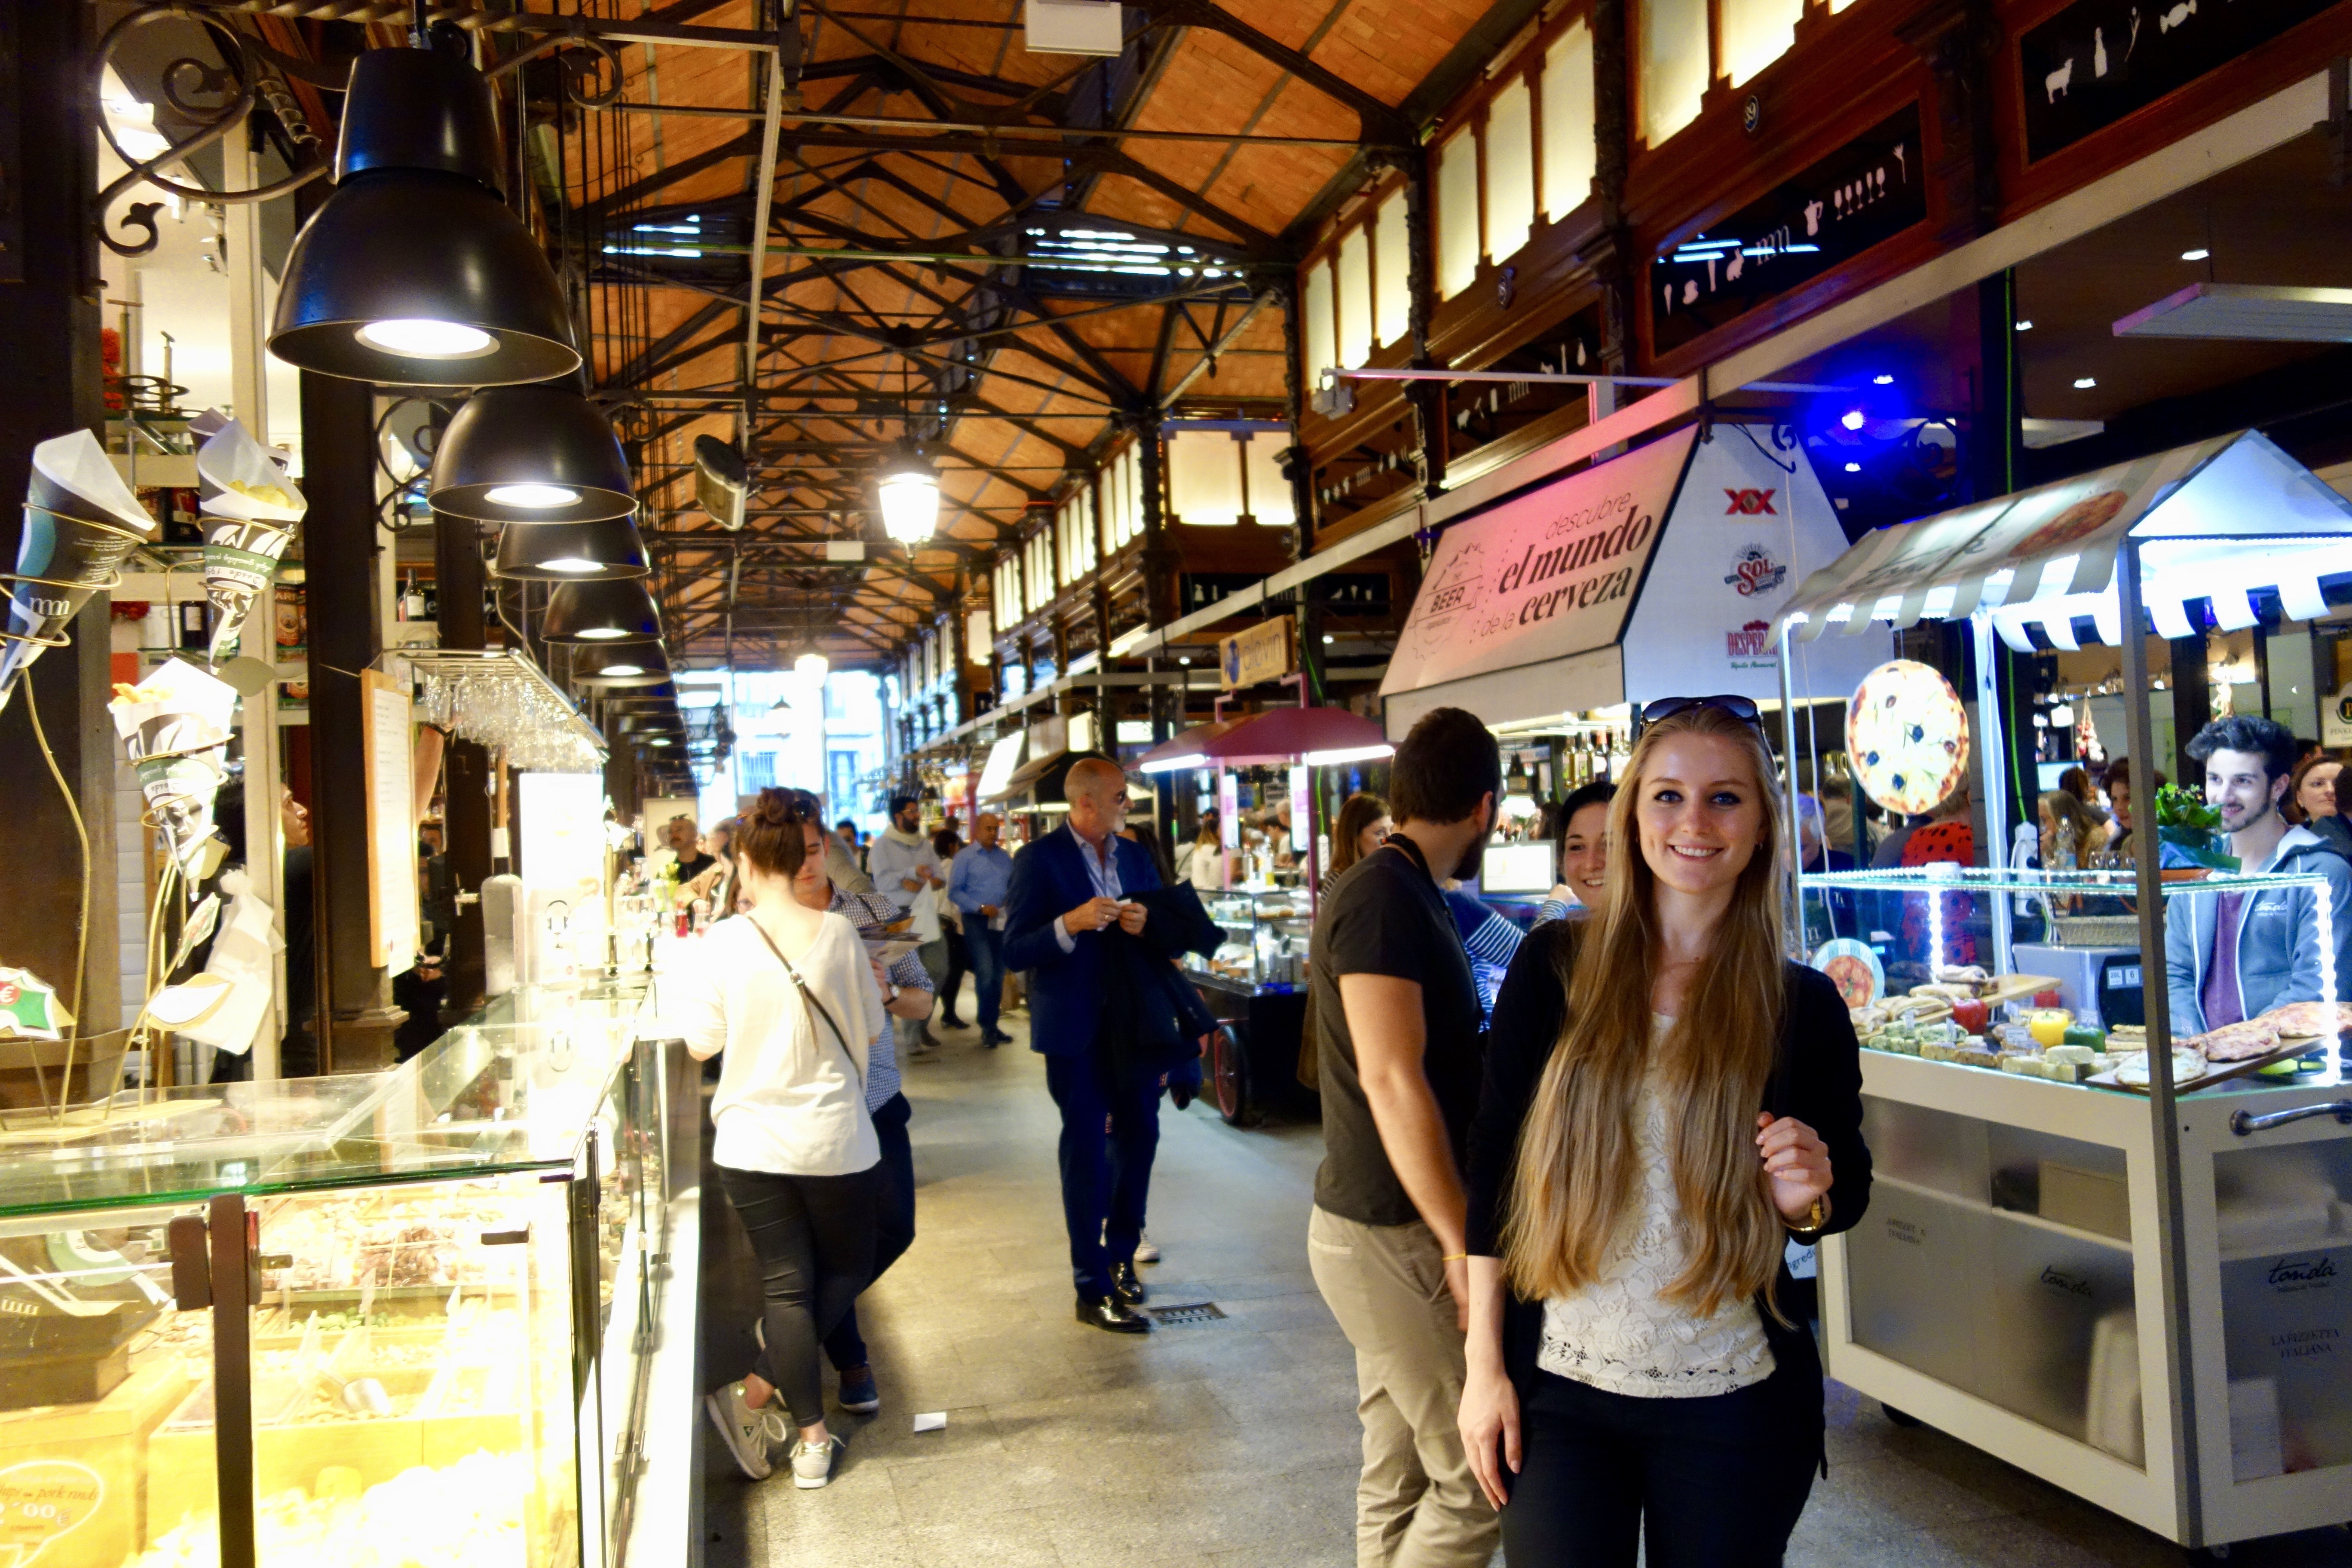 Madrid: Mercado de San Miguel